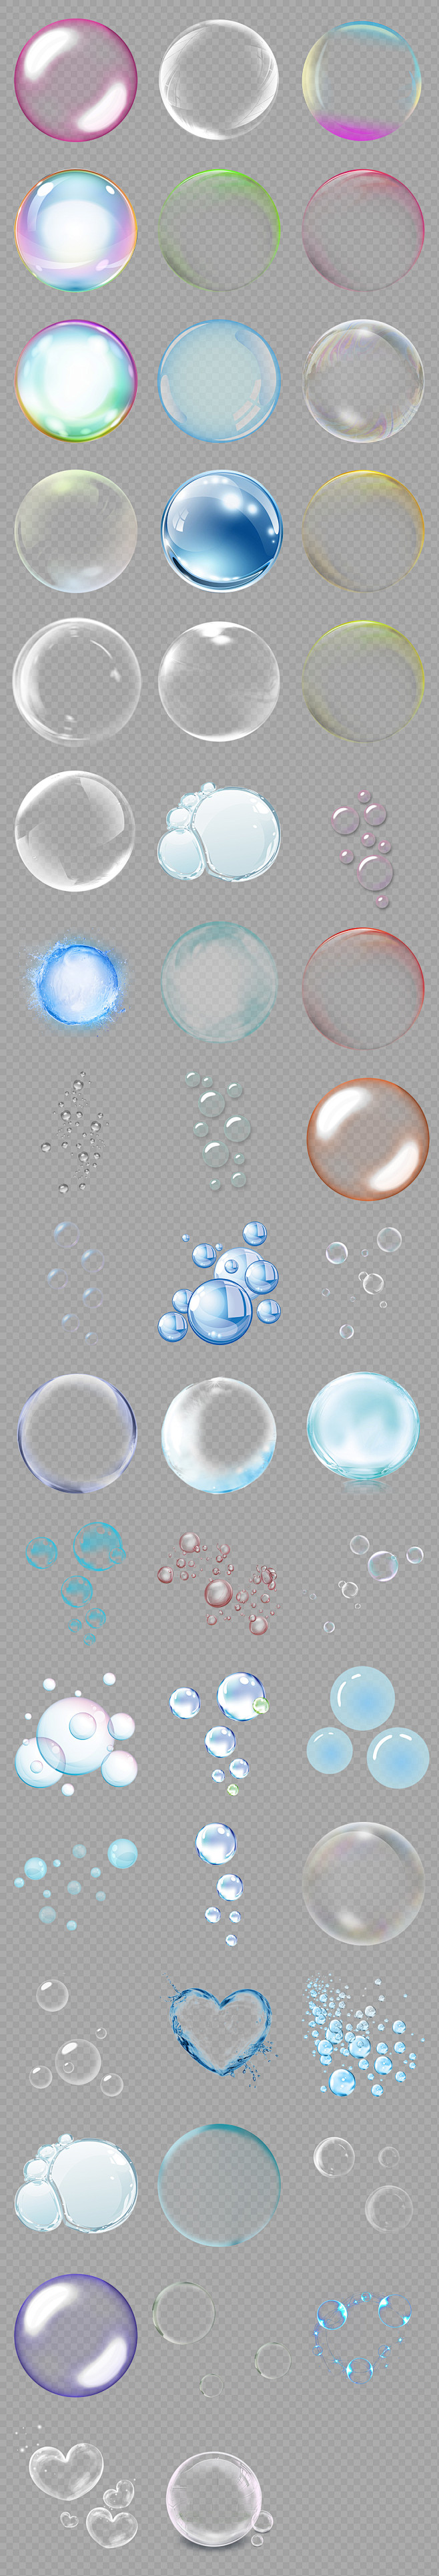 透明多彩泡泡气泡水泡海报素材背景图片PN...